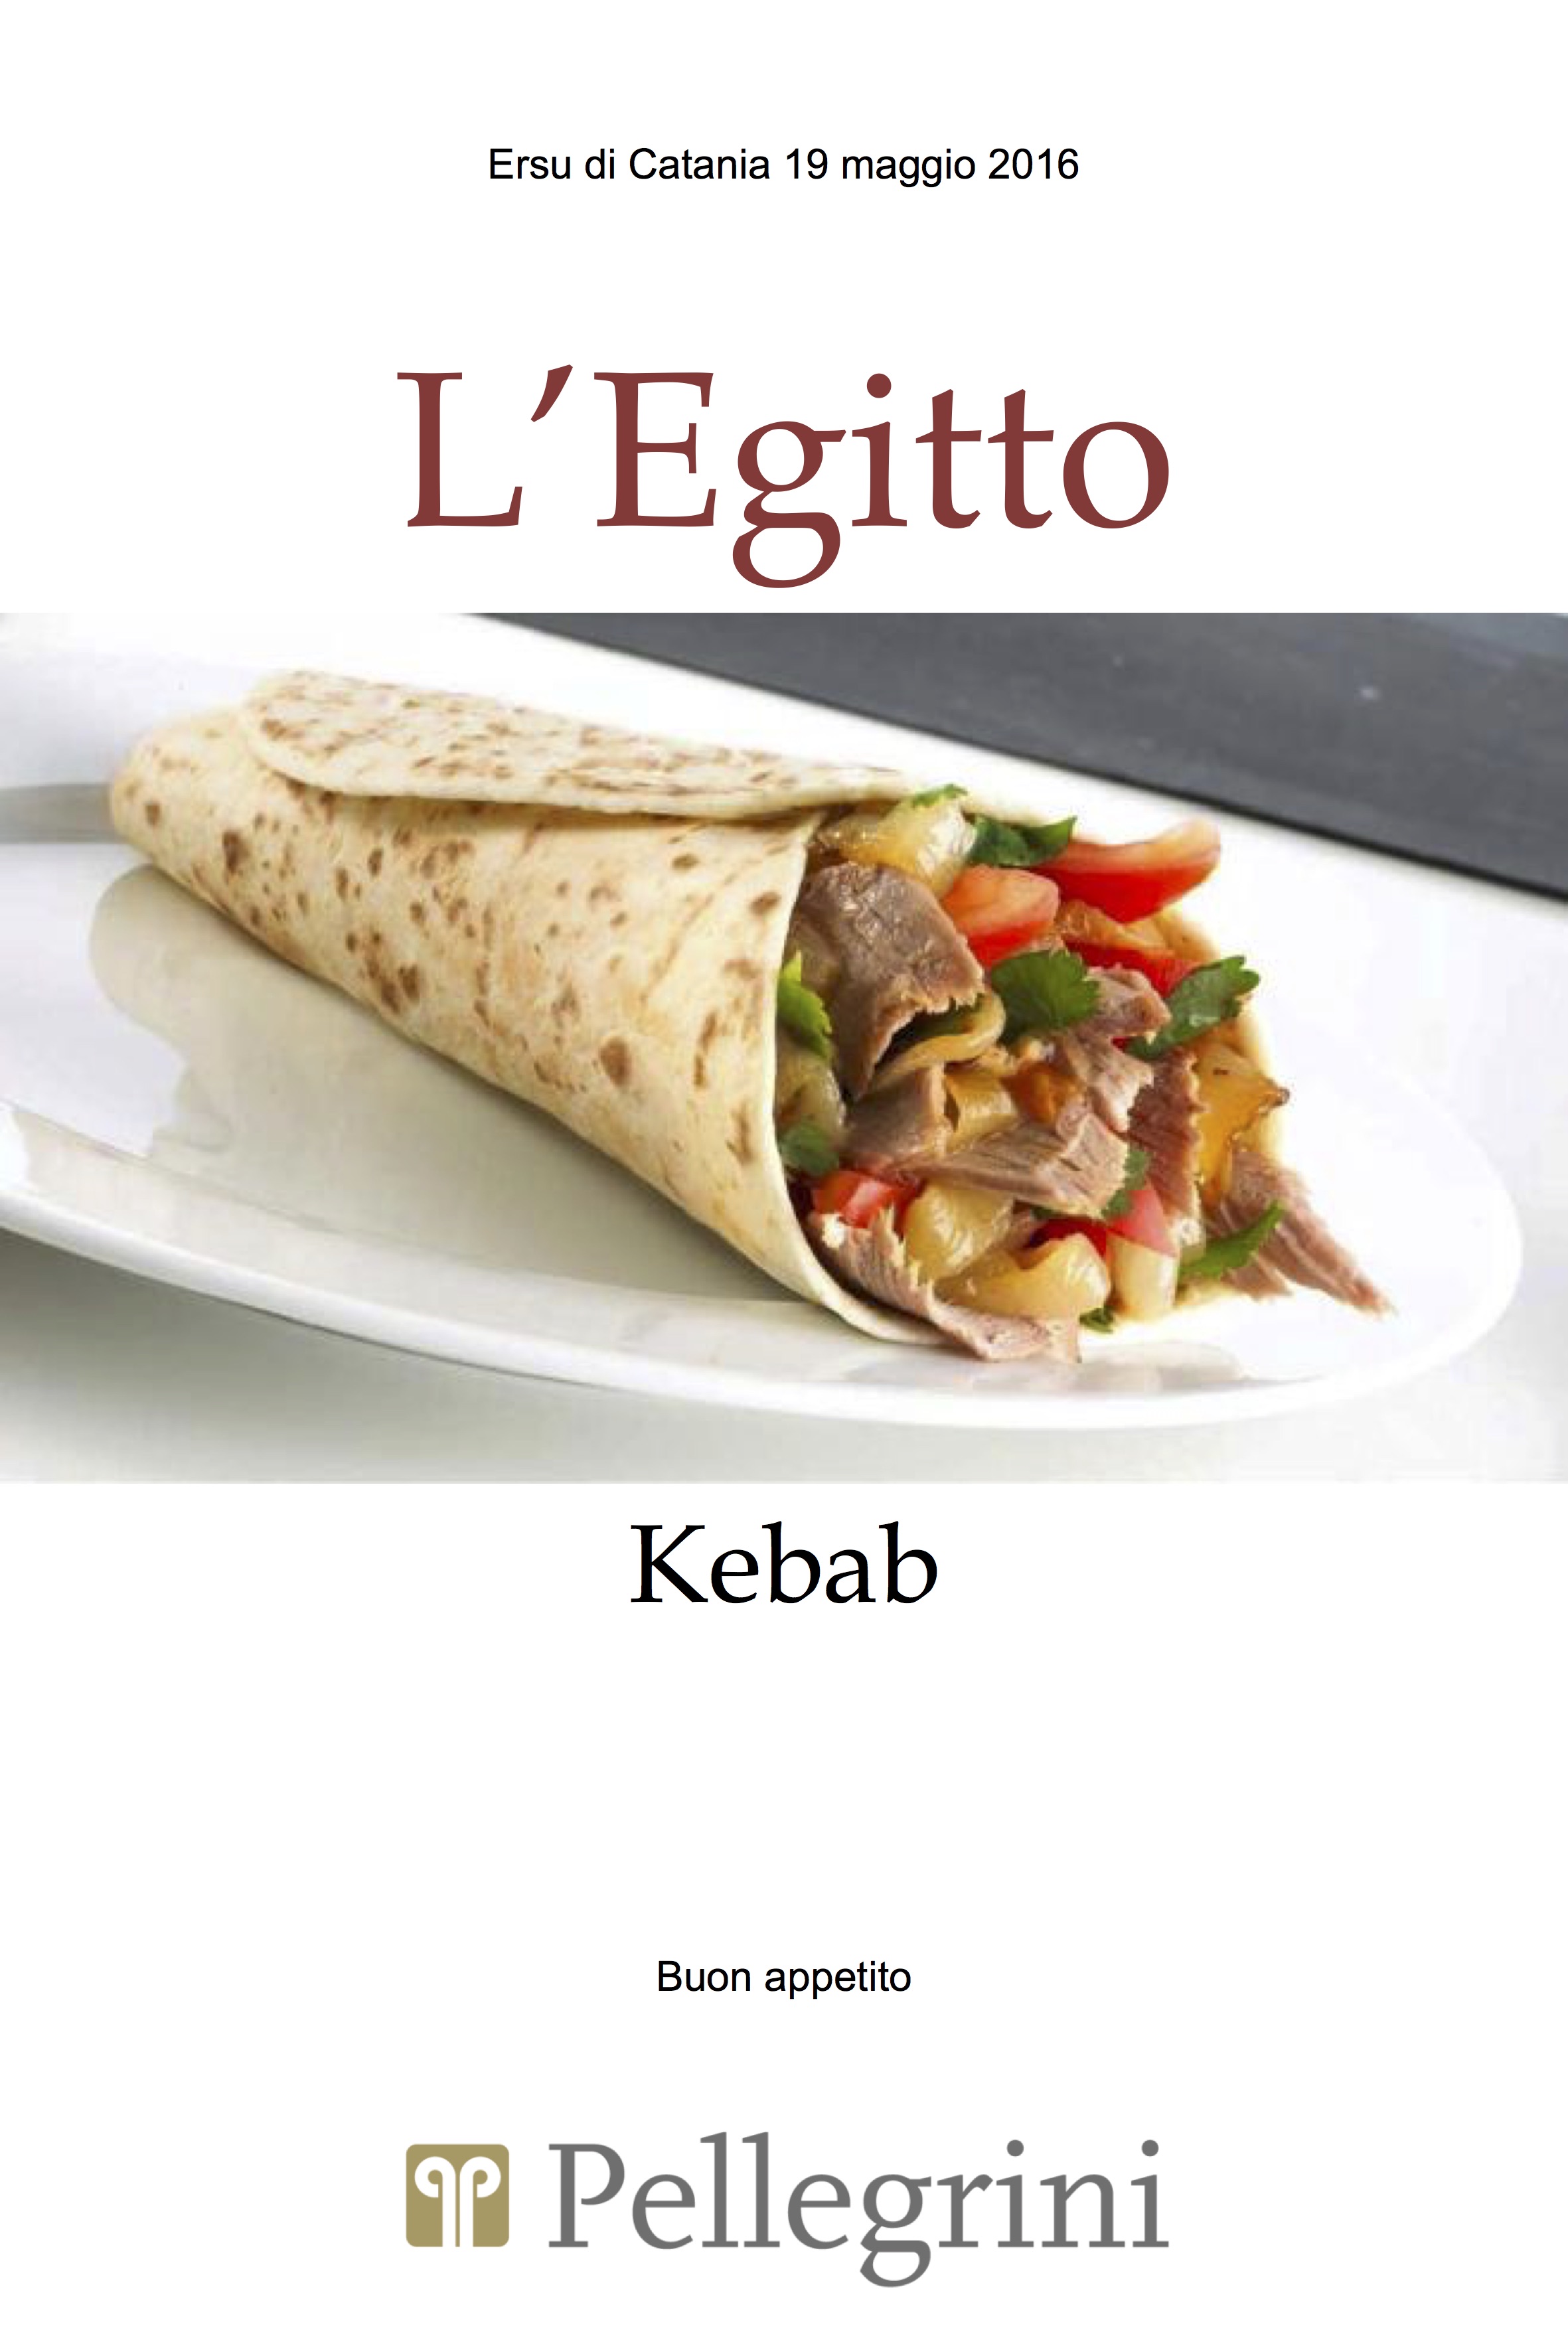 Kebab del 19-05-2016